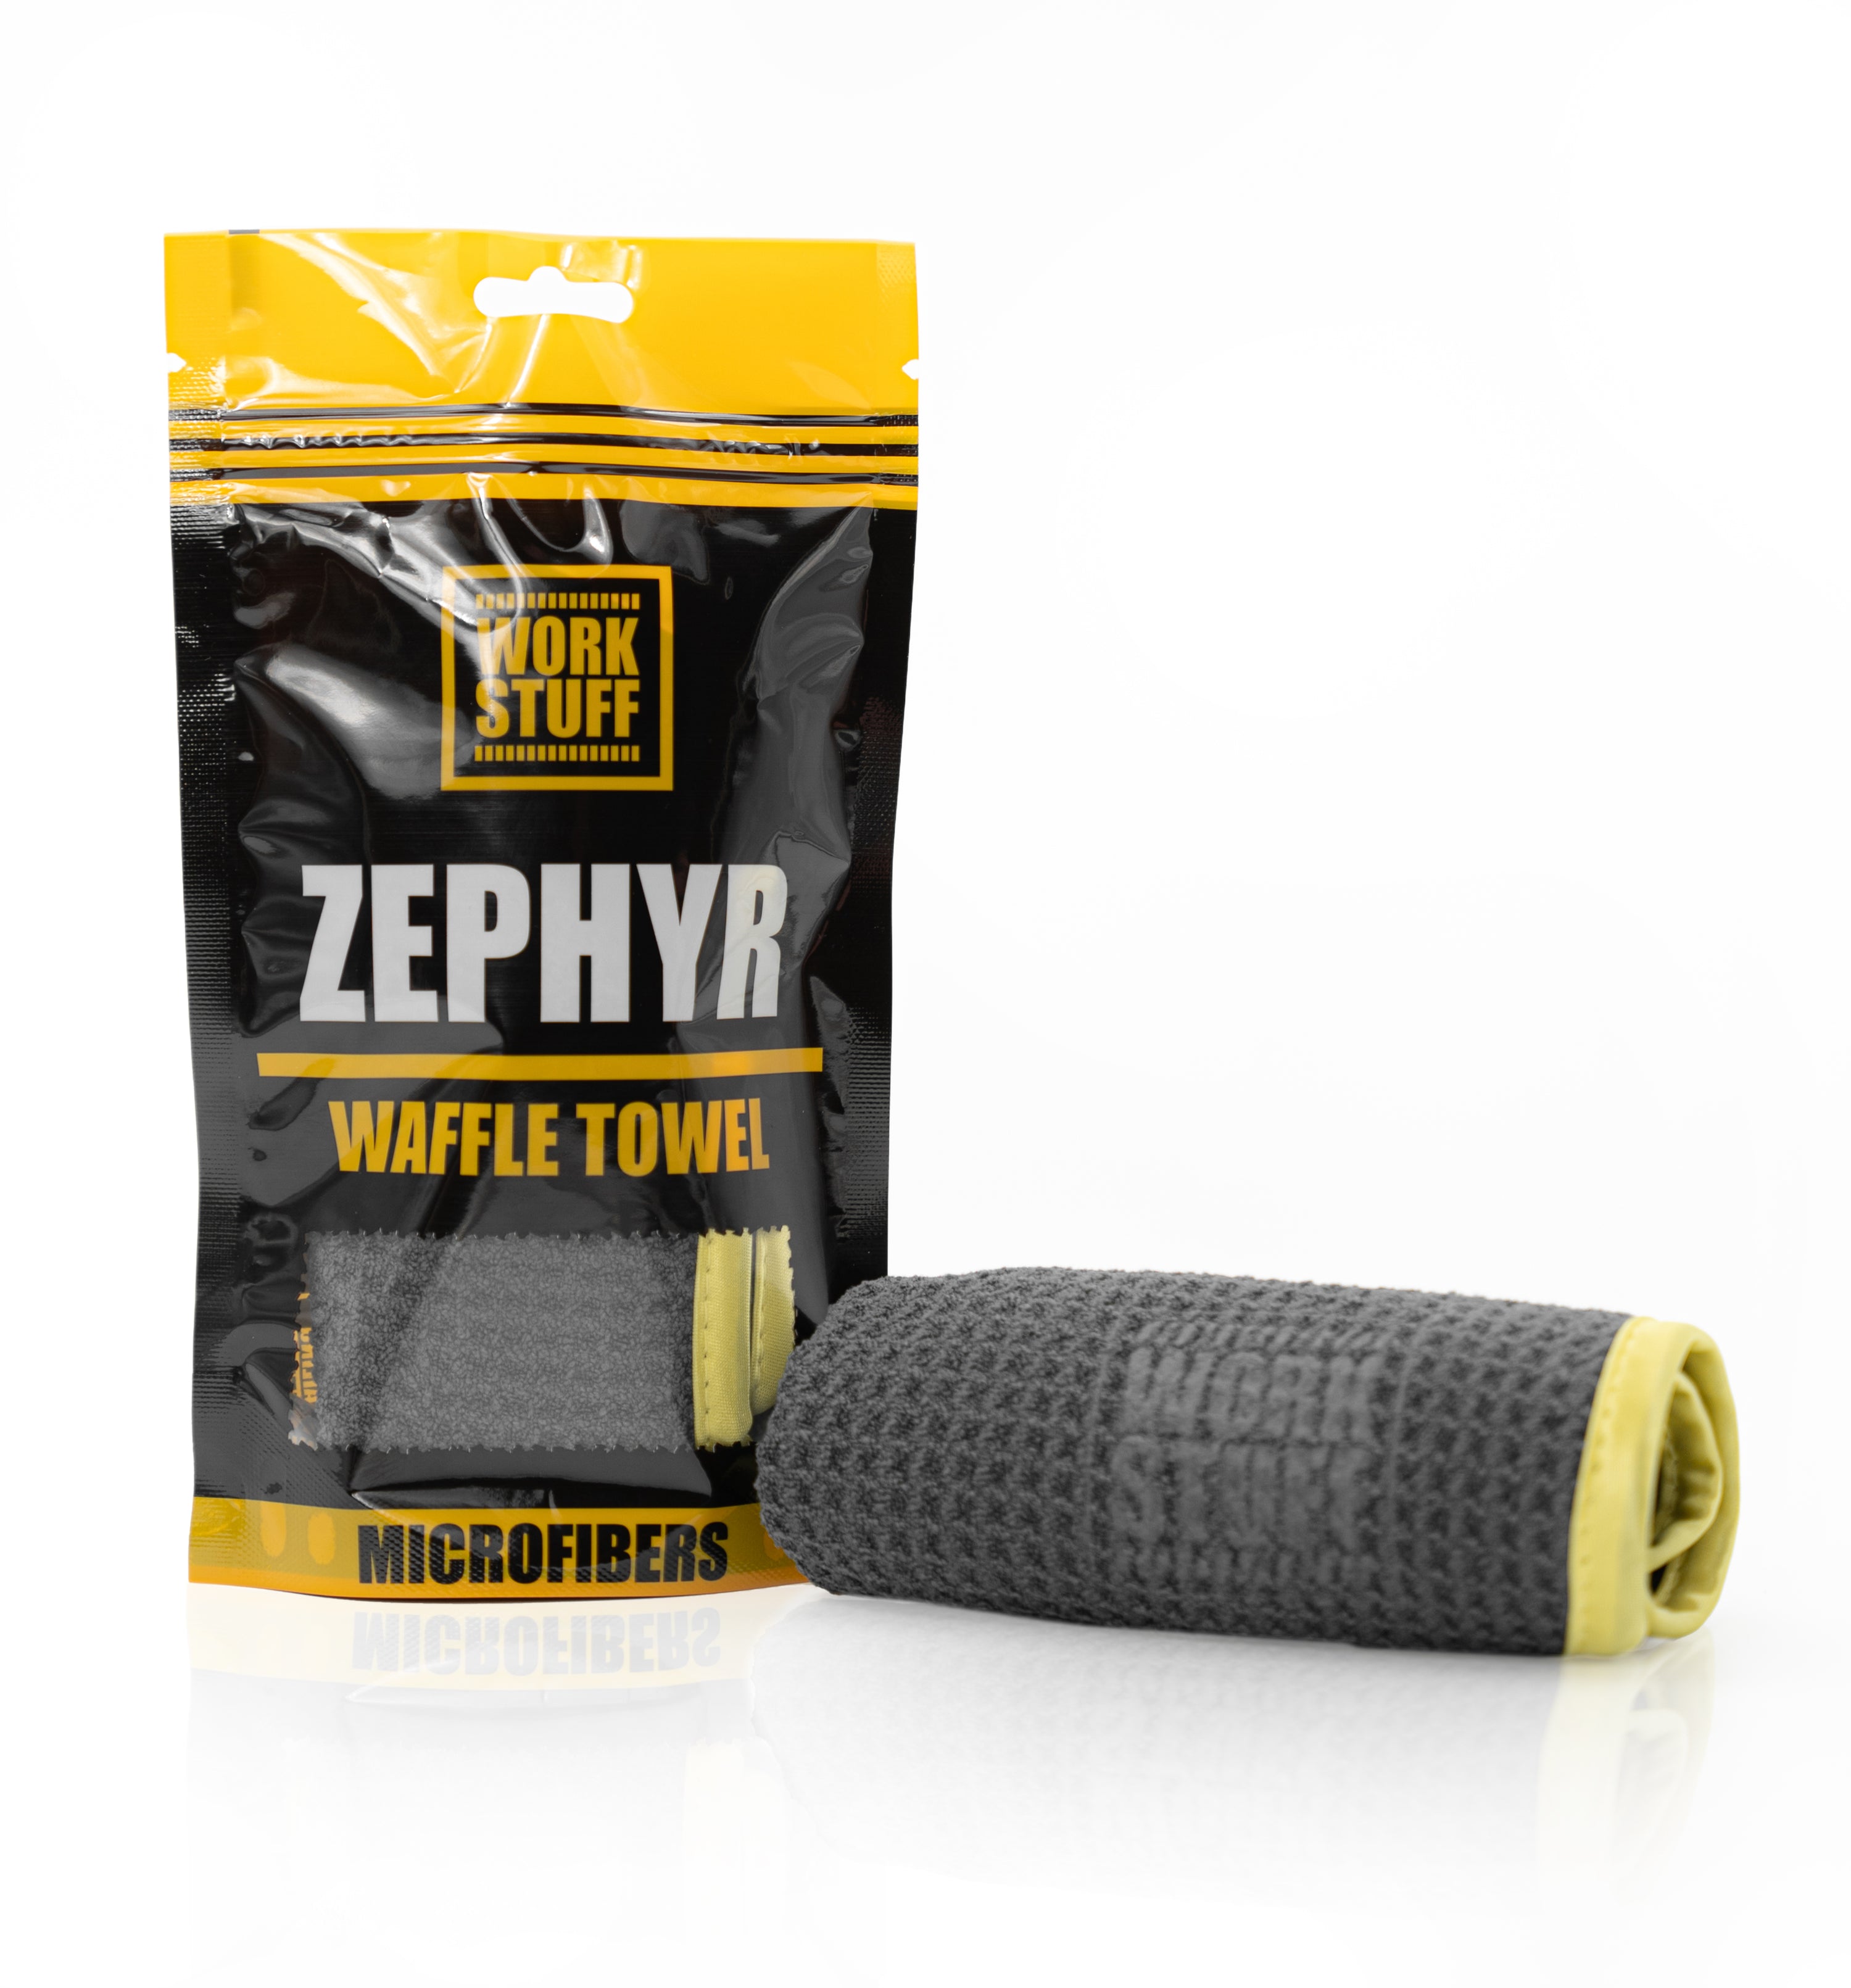 WORKSTUFF - Zephyr Waffle Towel (Microfibre pour vitres)